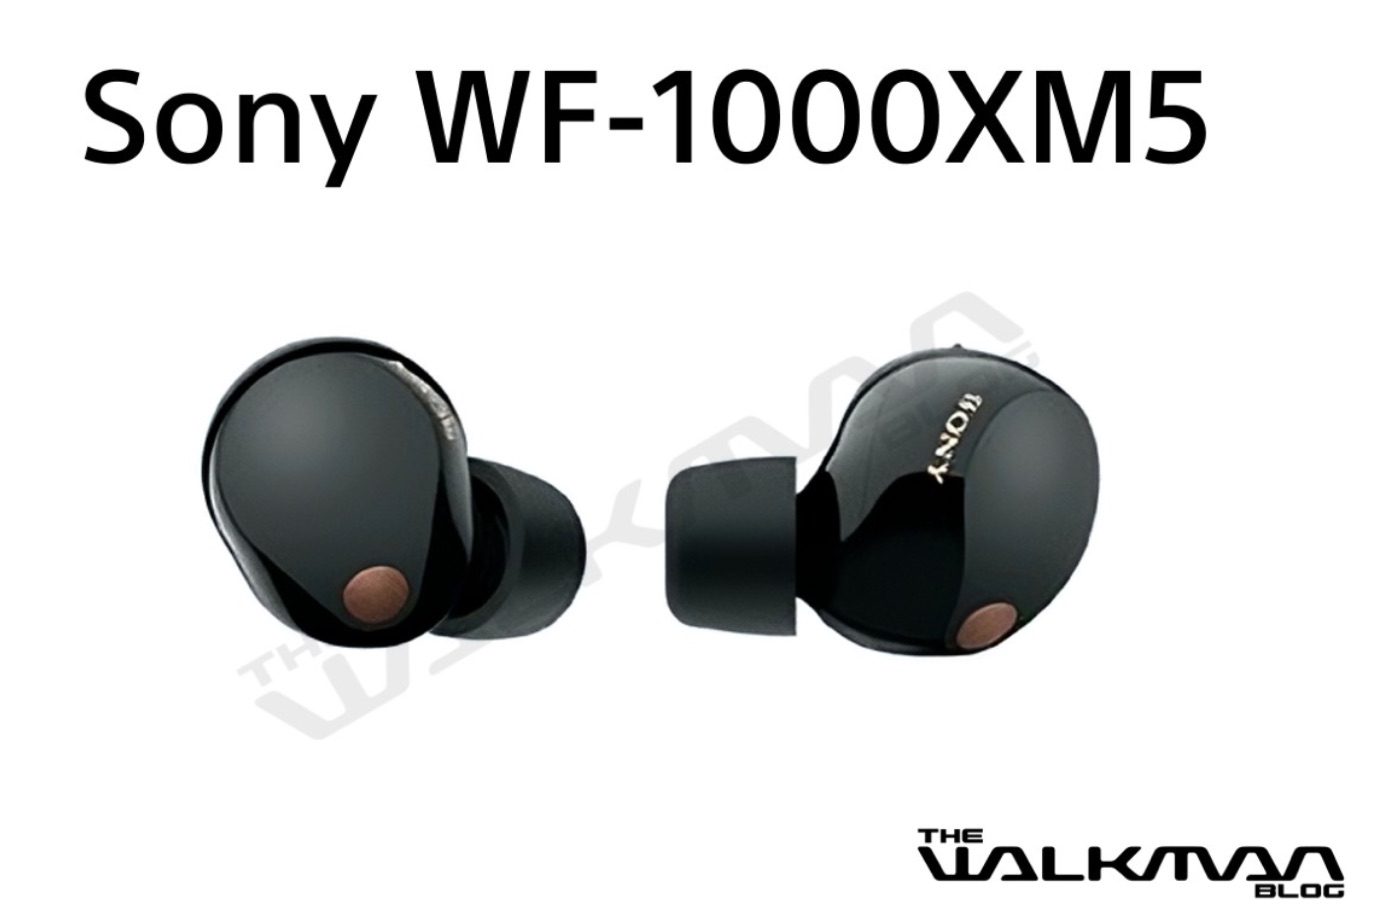 ソニーの最新ワイヤレスイヤホン「WF-1000XM5」画像がリークされスペックや発表日も明らかに